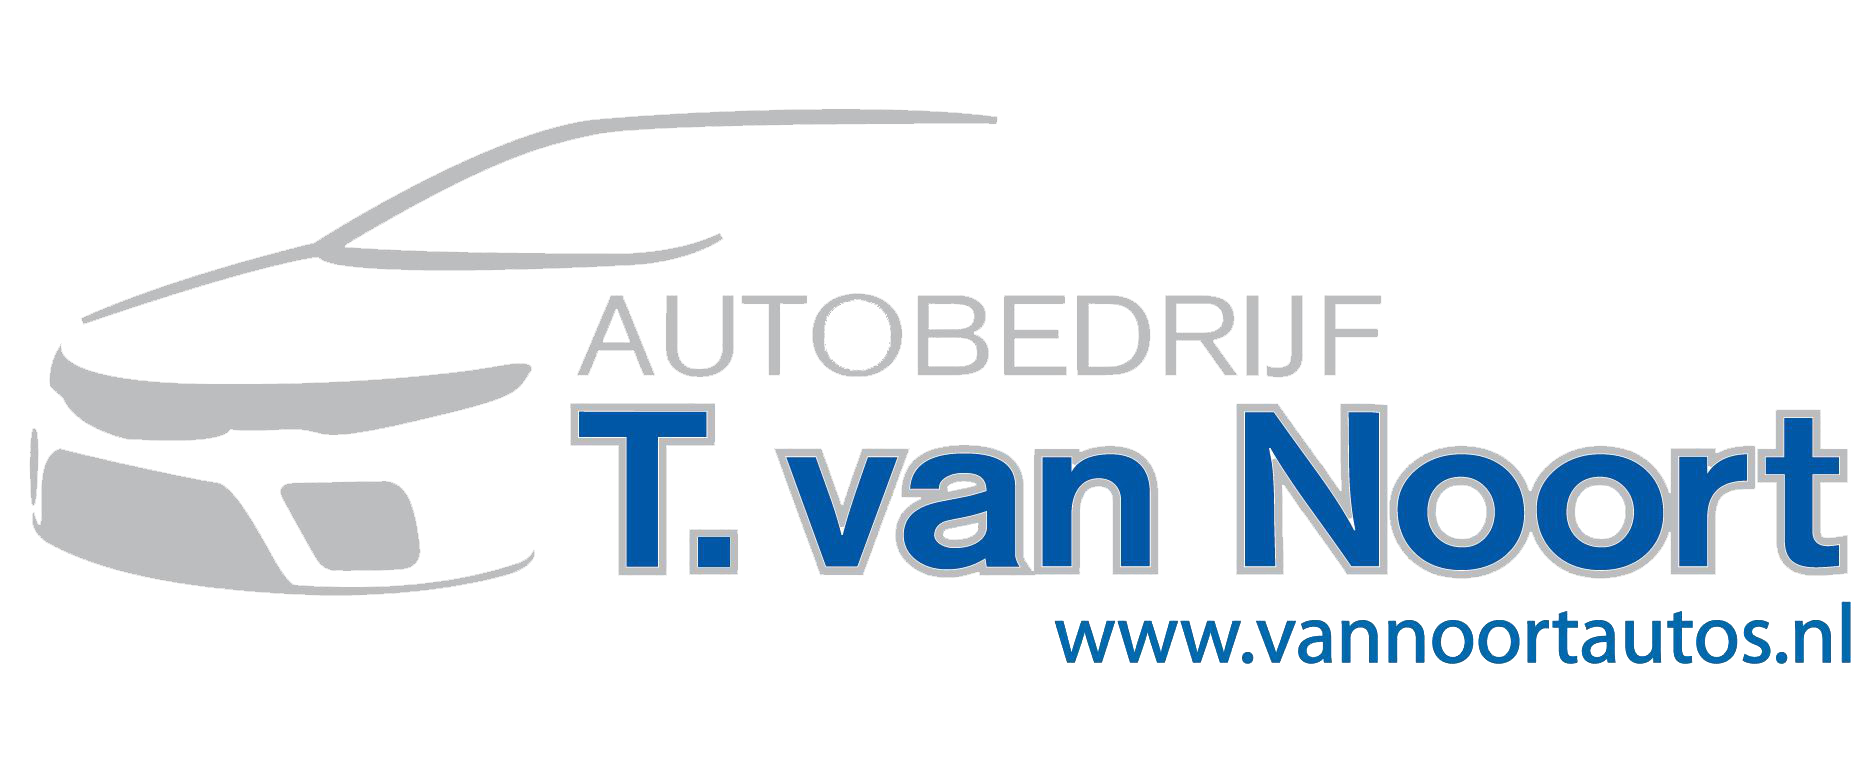 Autobedrijf T. van Noort logo